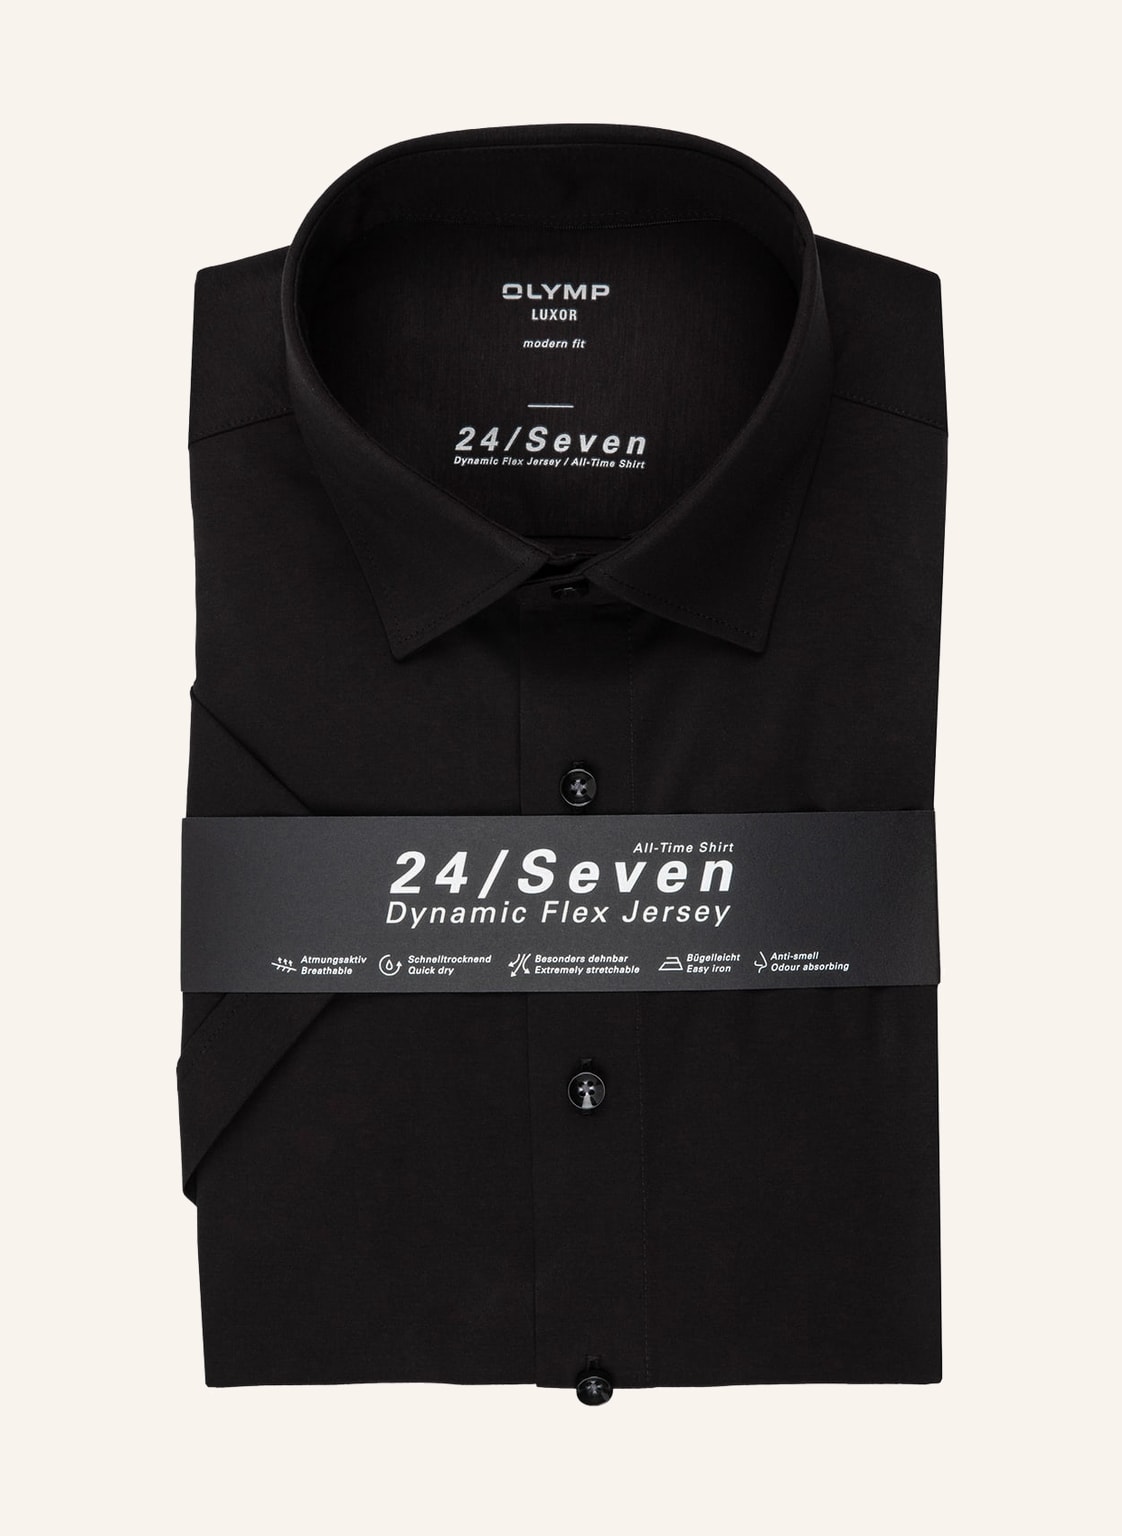 Olymp Kurzarm-Hemd Luxor 24/Seven Modern Fit schwarz von Olymp